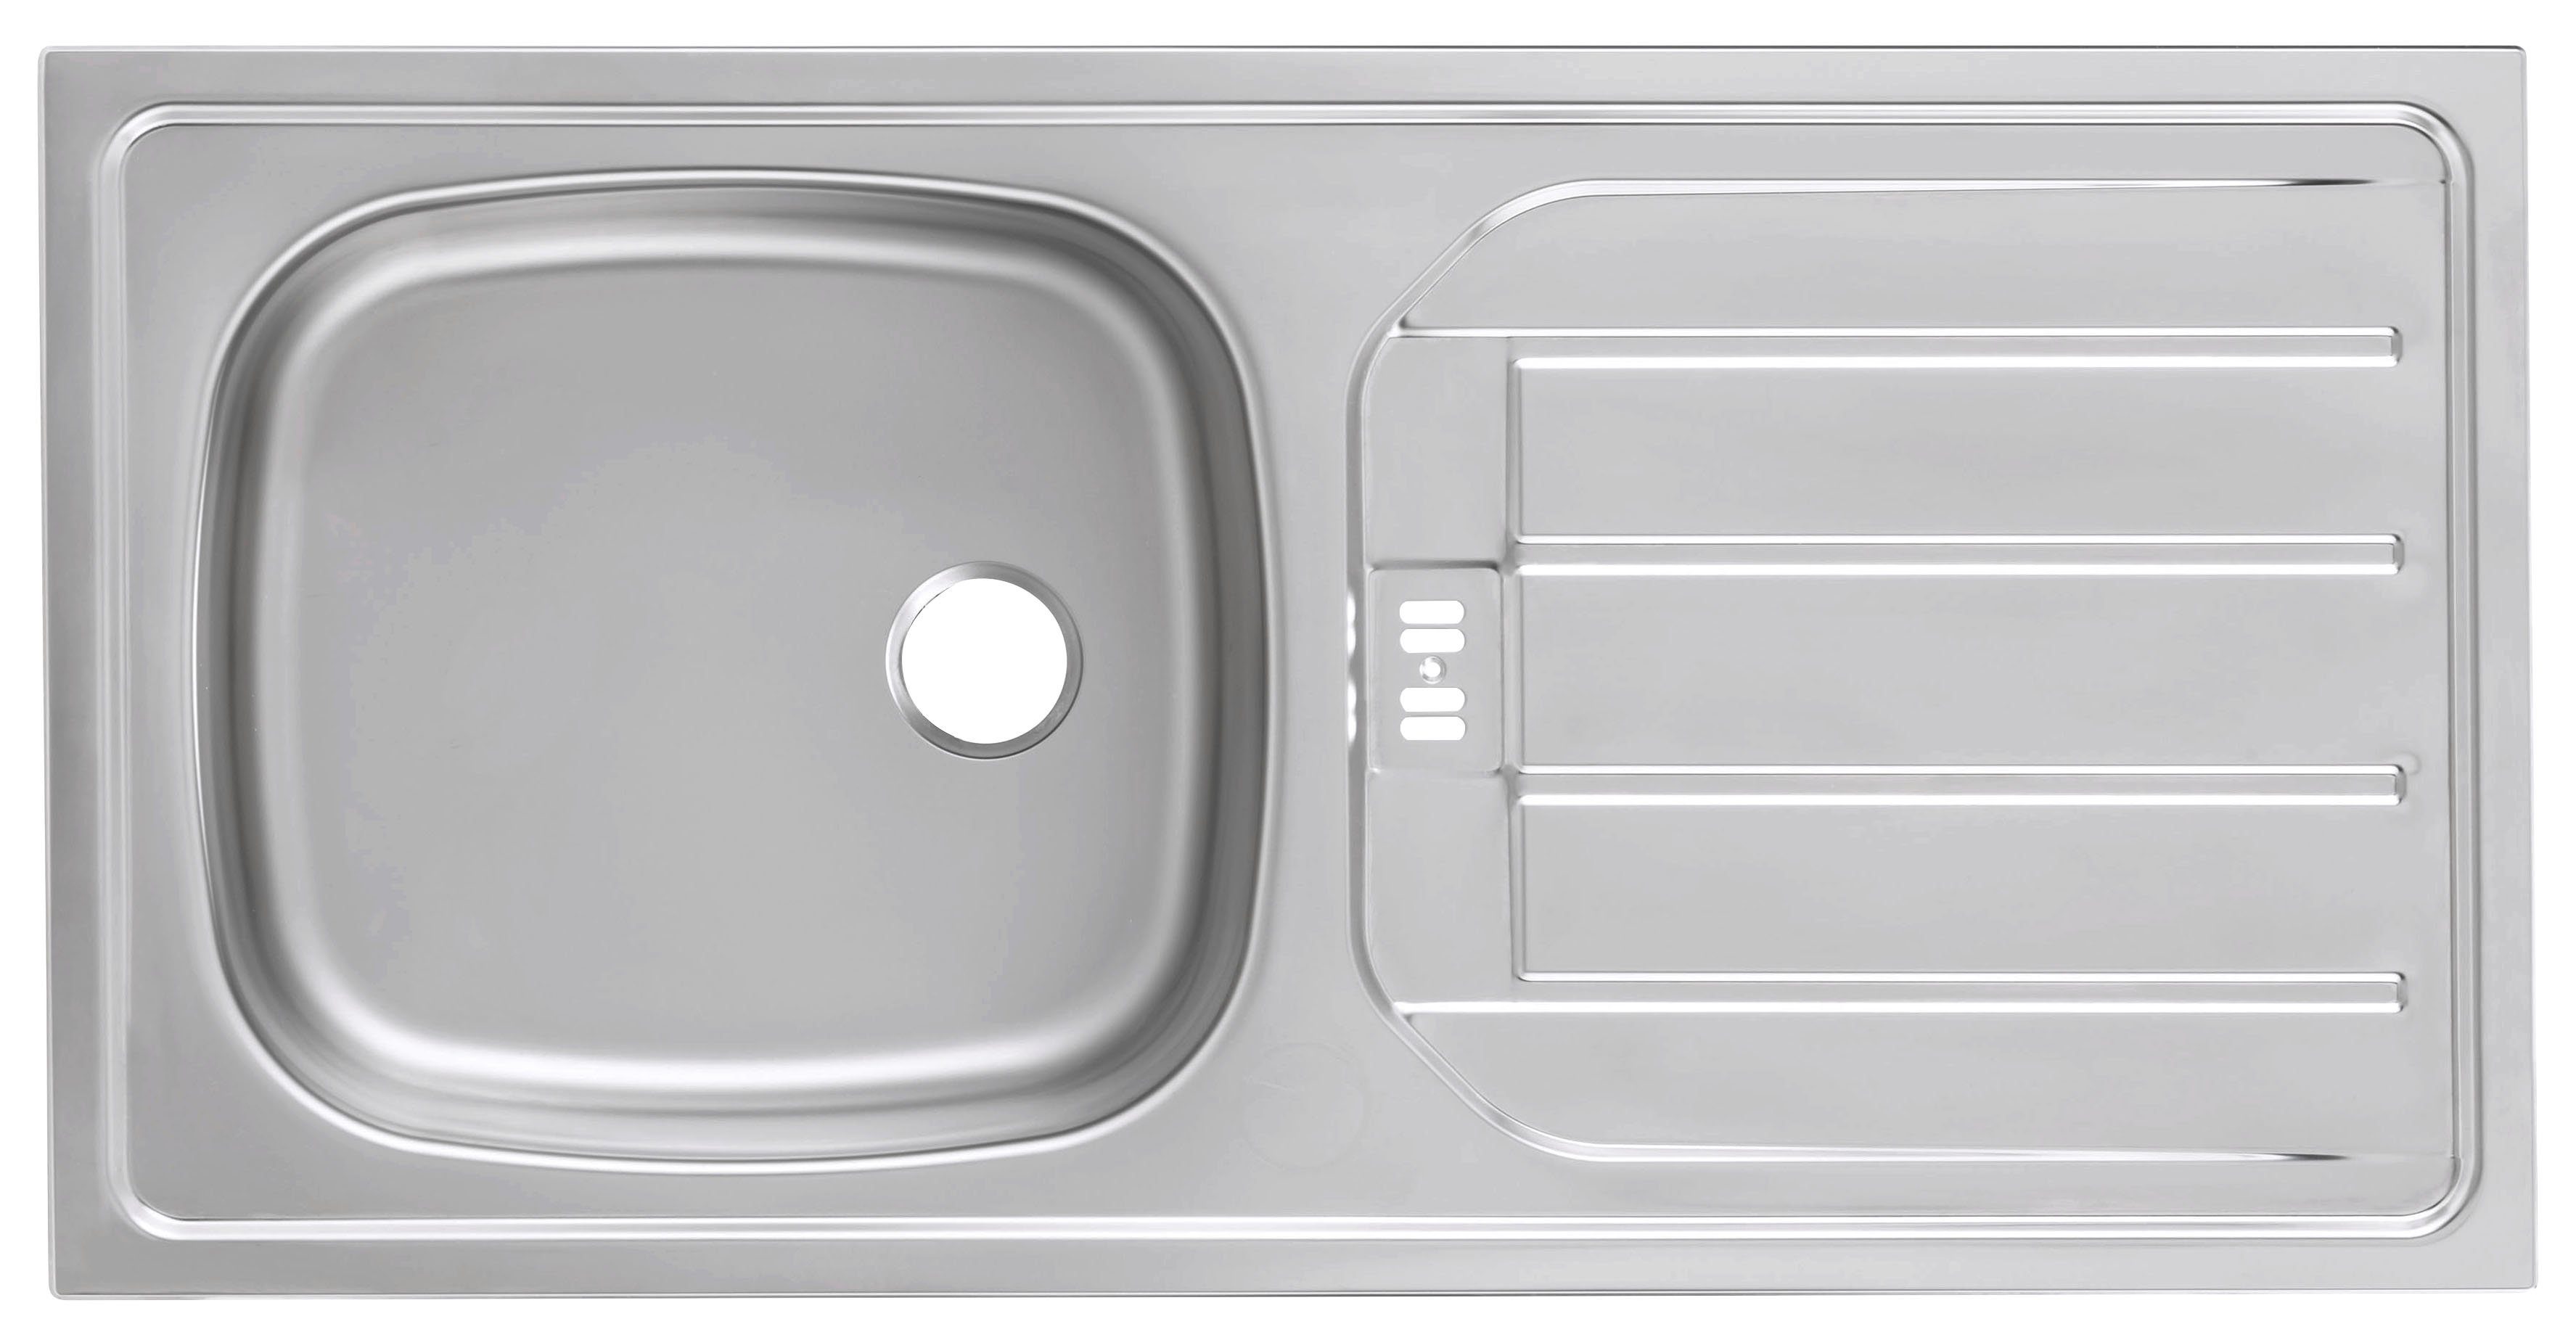 HELD MÖBEL Küchenzeile Brindisi, Hochglanz/weiß E-Geräten, weiß mit Breite cm weiß 210 